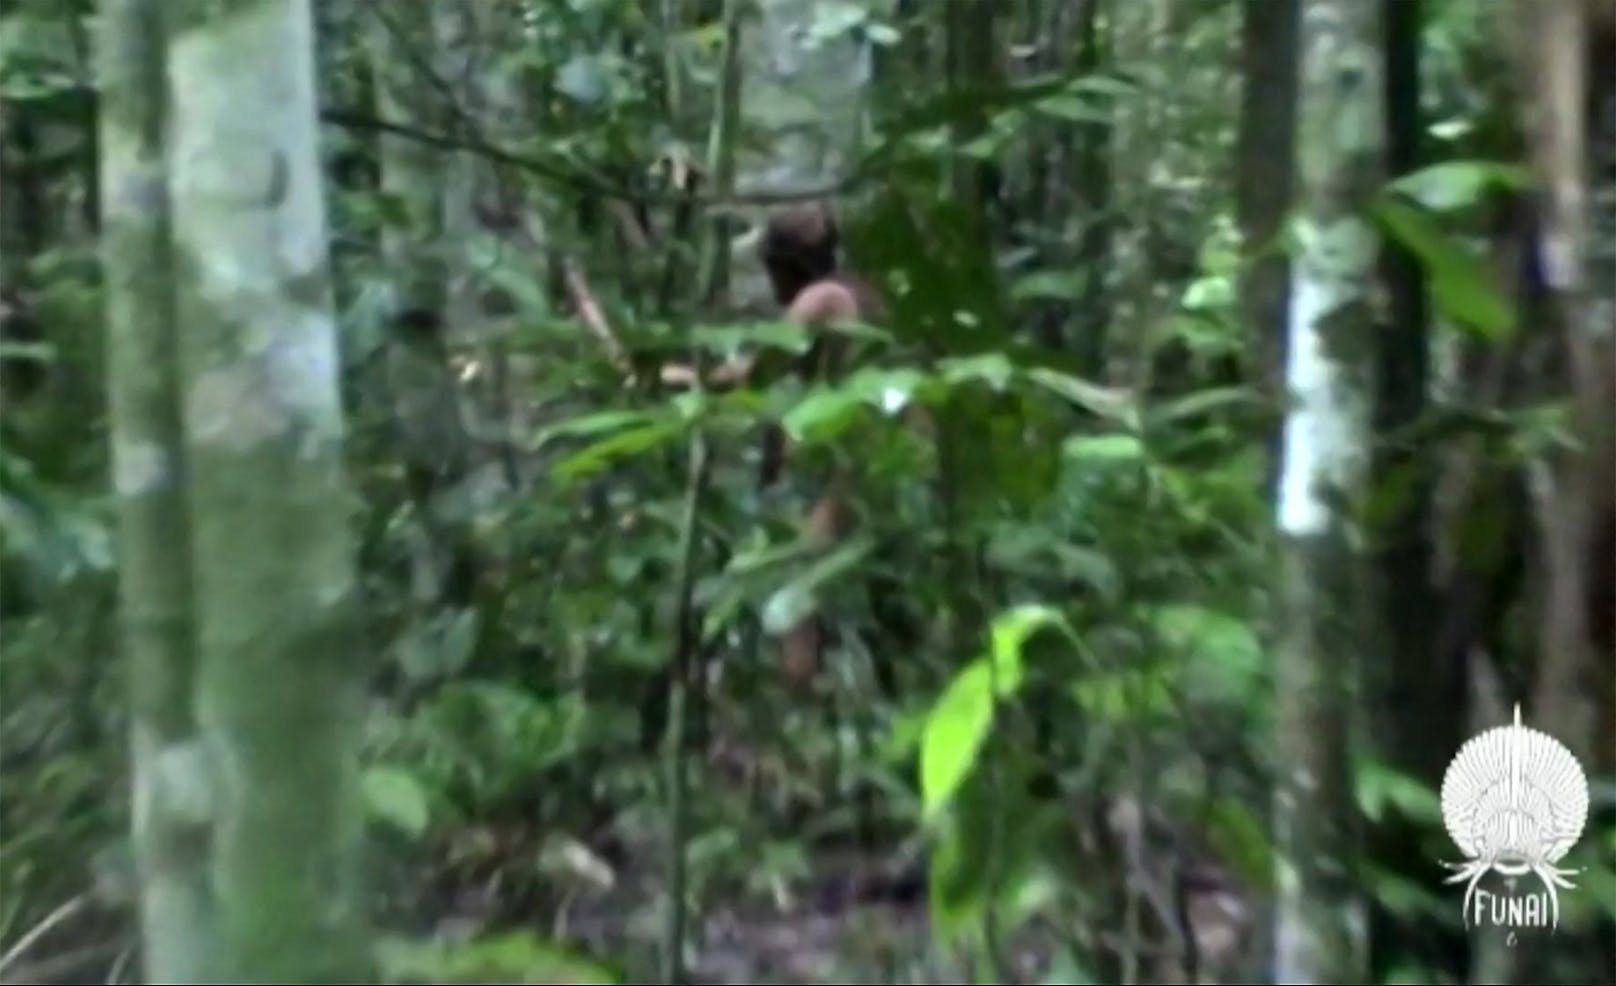 Für mindestens 26 Jahre (über)lebte der <a target="_blank" data-li-document-ref="100225343" href="https://www.heute.at/g/einsamster-mann-der-welt-stirbt-nach-26-jahren-im-dschungel-100225343">letzte Ureinwohner vom in Isolation lebenden Stamm der Tanuru</a> völlig alleine und ohne Kontakt zur Außenwelt im brasilianischen Regenwald.